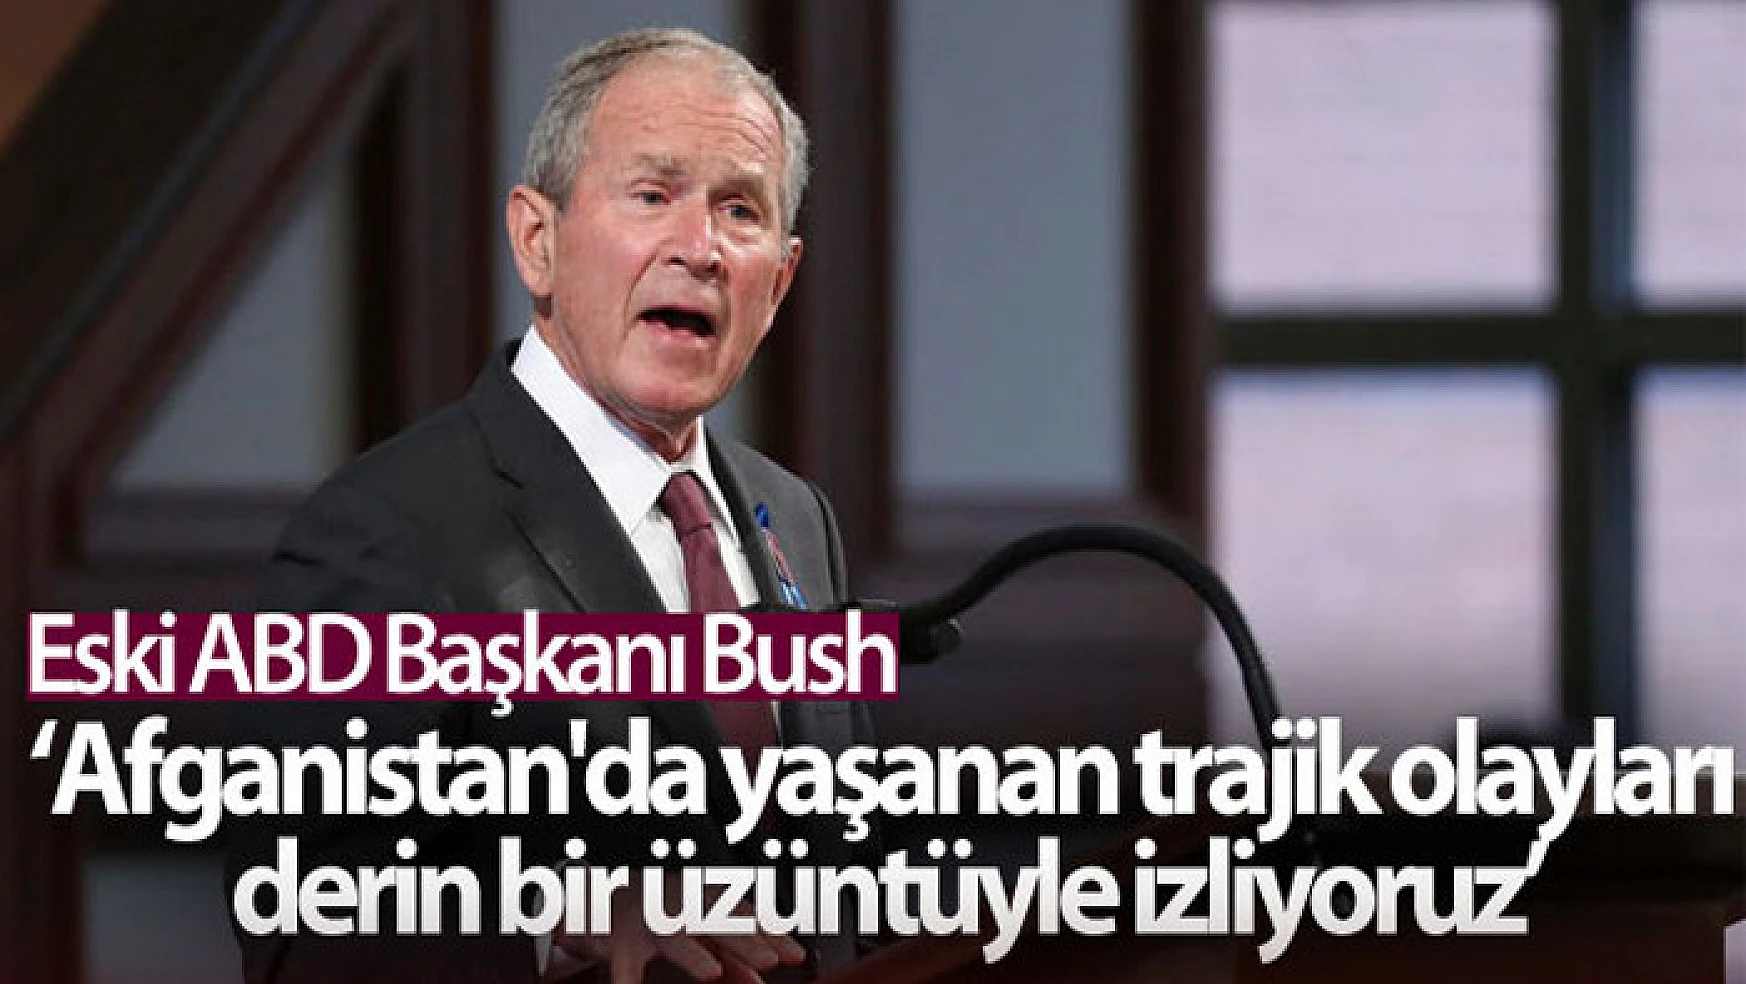 Eski ABD Başkanı Bush: 'Afganistan'da yaşanan trajik olayları derin bir üzüntüyle izliyoruz'